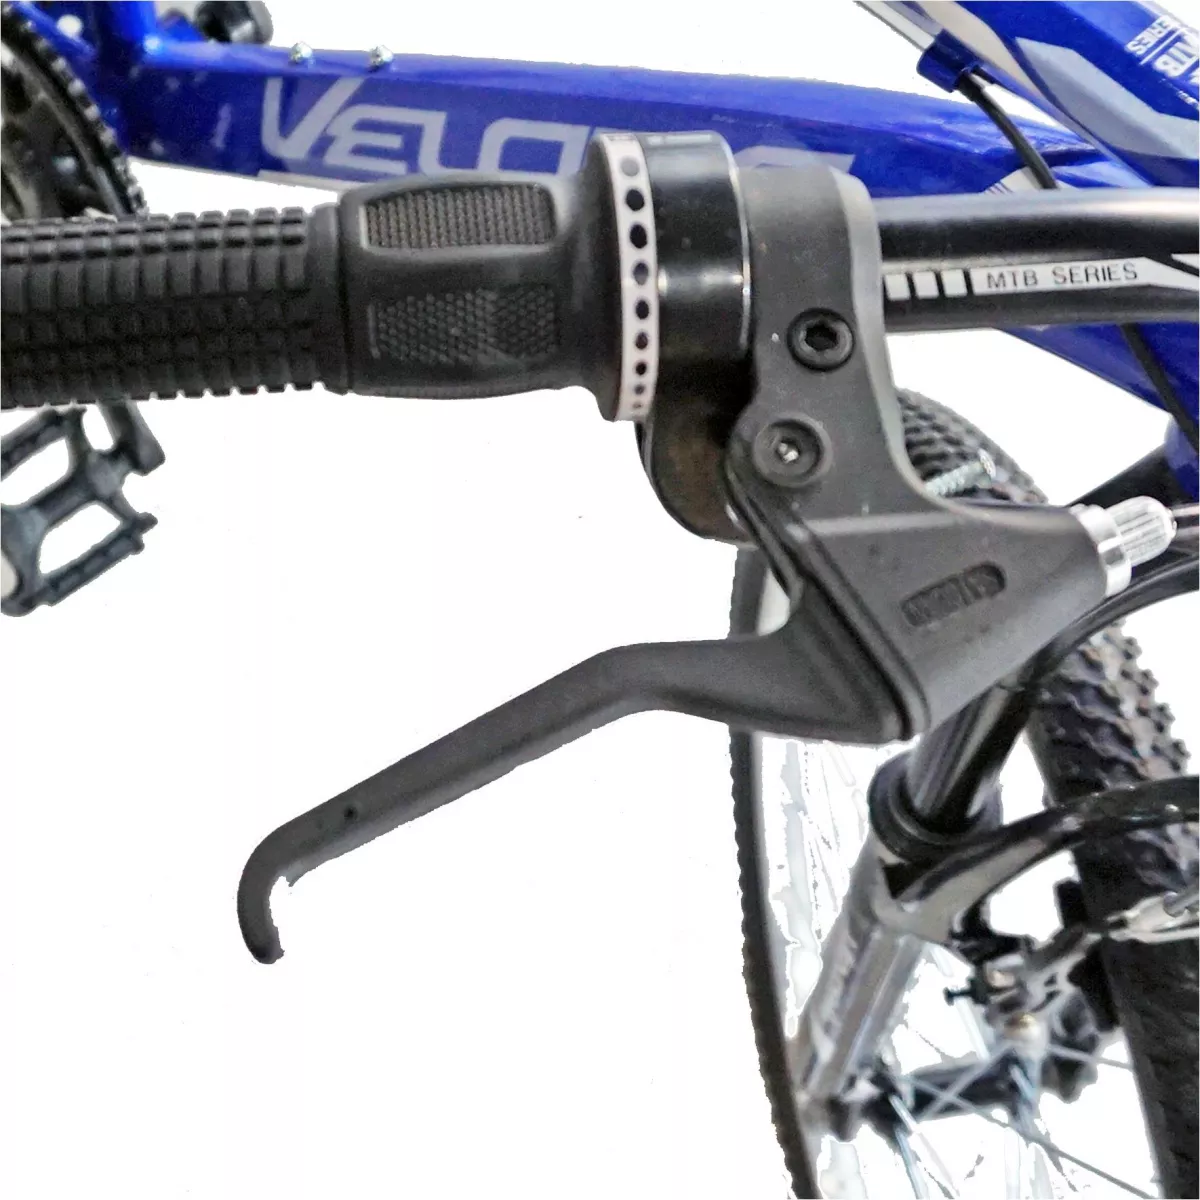 Bicicleta MTB-HT 29" VELORS Scorpion V2971A, cadru aluminiu, 18 viteze, culoare albastru/gri - RESIGILATA